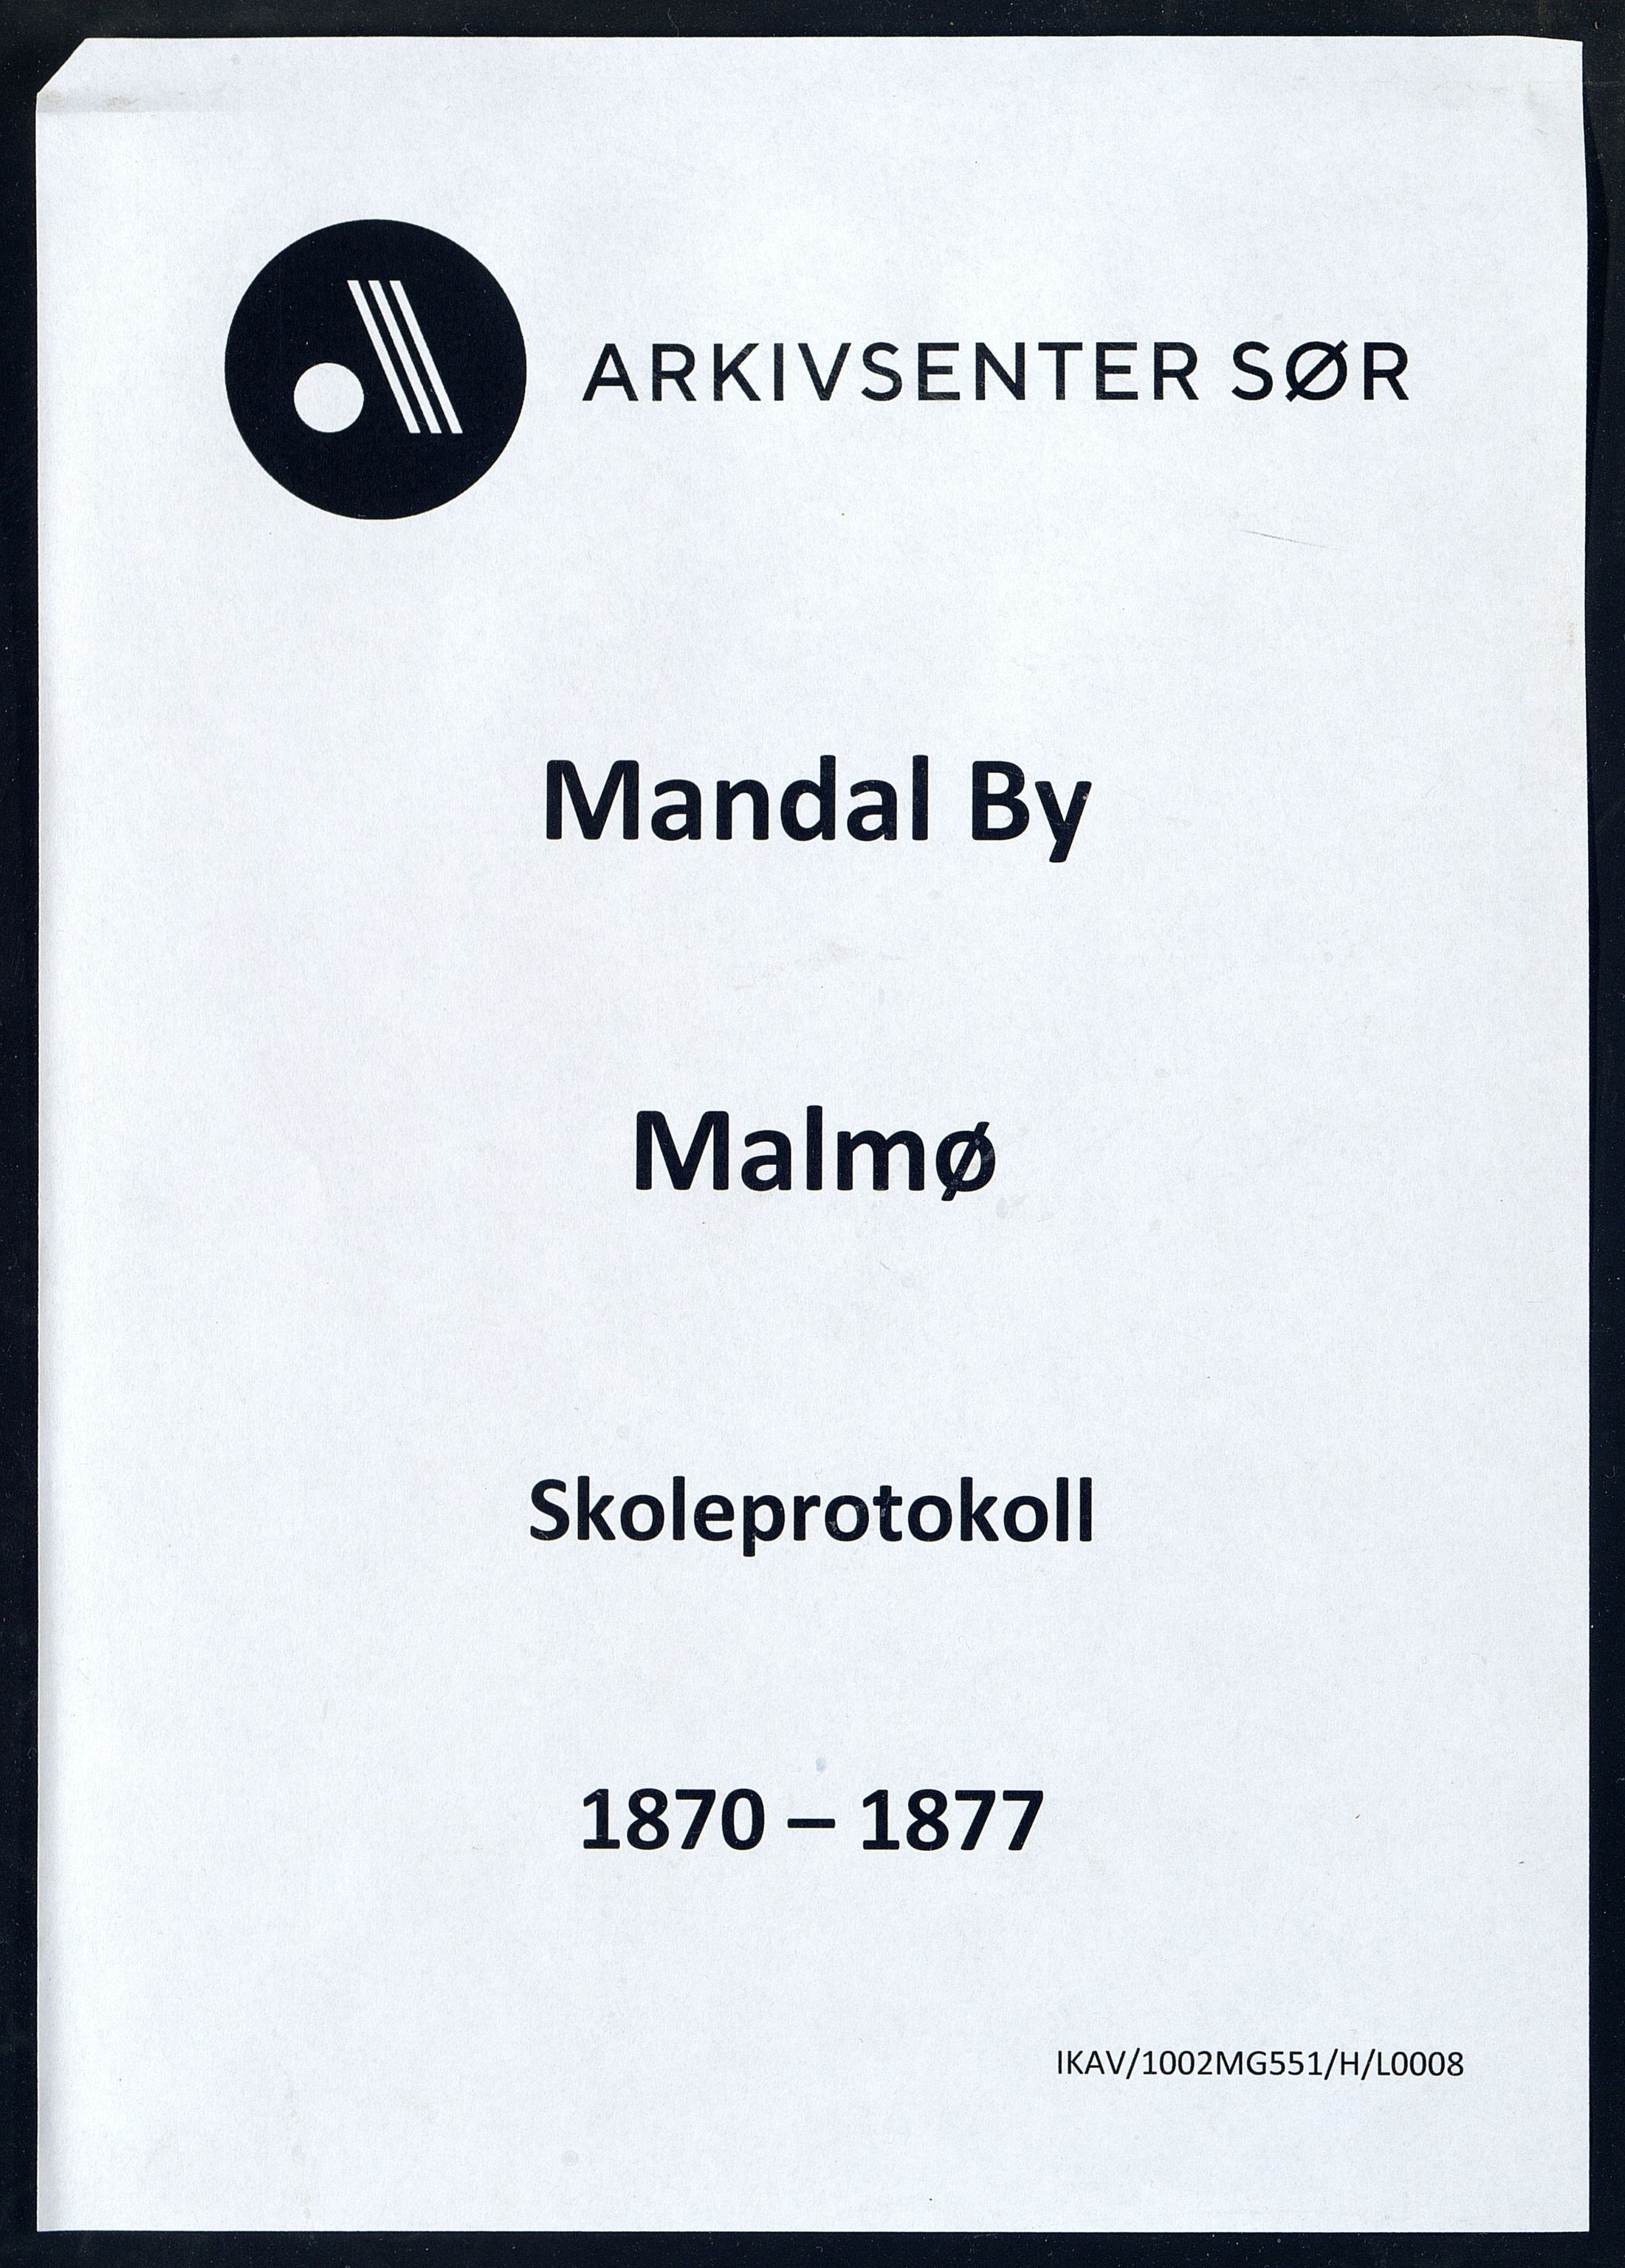 Mandal By - Mandal Allmueskole/Folkeskole/Skole, IKAV/1002MG551/H/L0008: Skoleprotokoll, 1870-1877